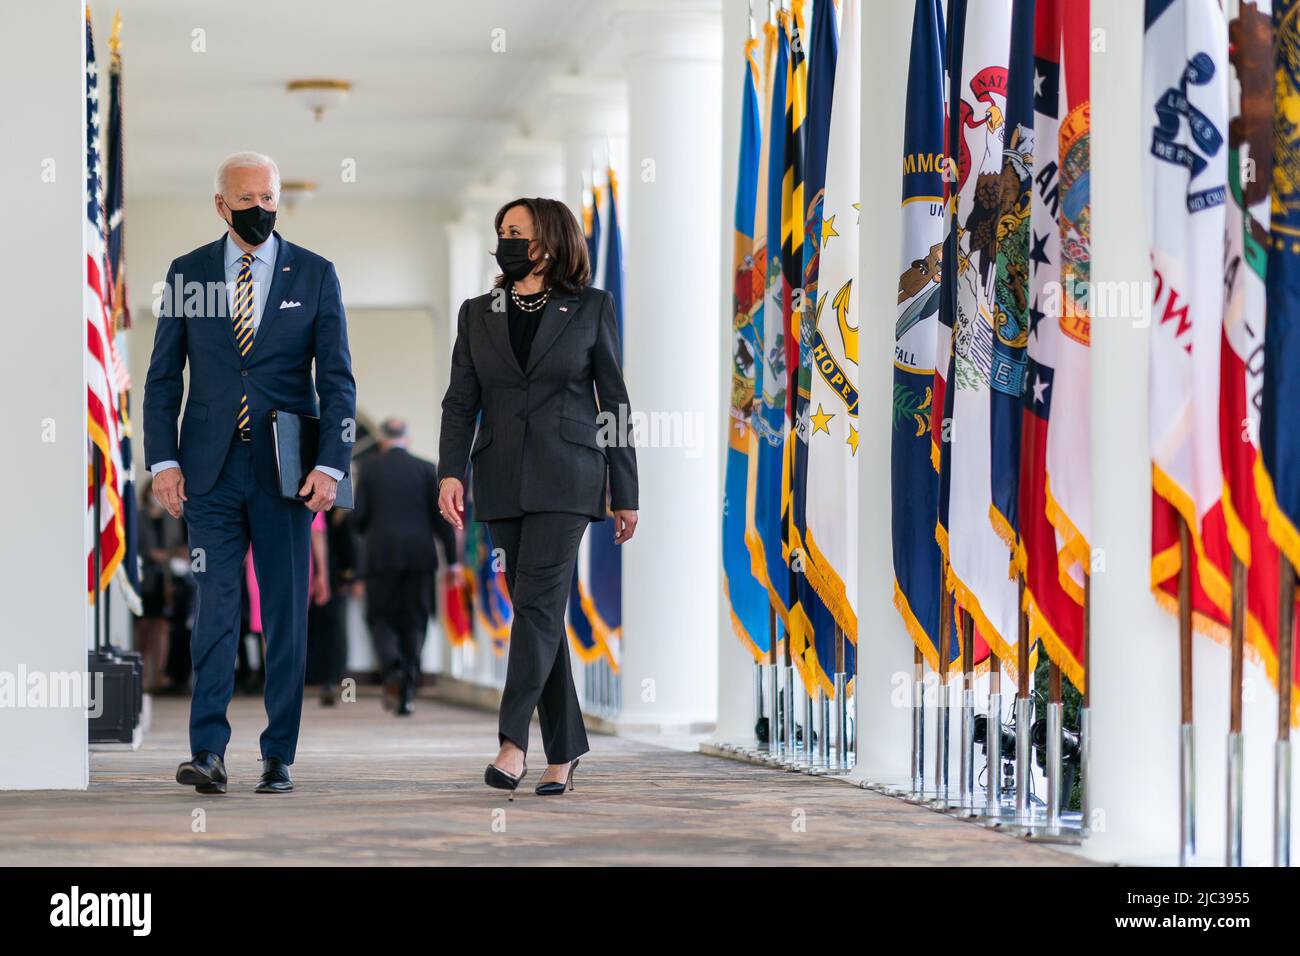 Präsident Joe Biden und Vizepräsident Kamala Harris gehen am Freitag, den 12. März 2021, vom Rosengarten des Weißen Hauses zum Oval Office, nachdem sie die Verabschiedung des amerikanischen Rettungsplans gefeiert haben. Stockfoto